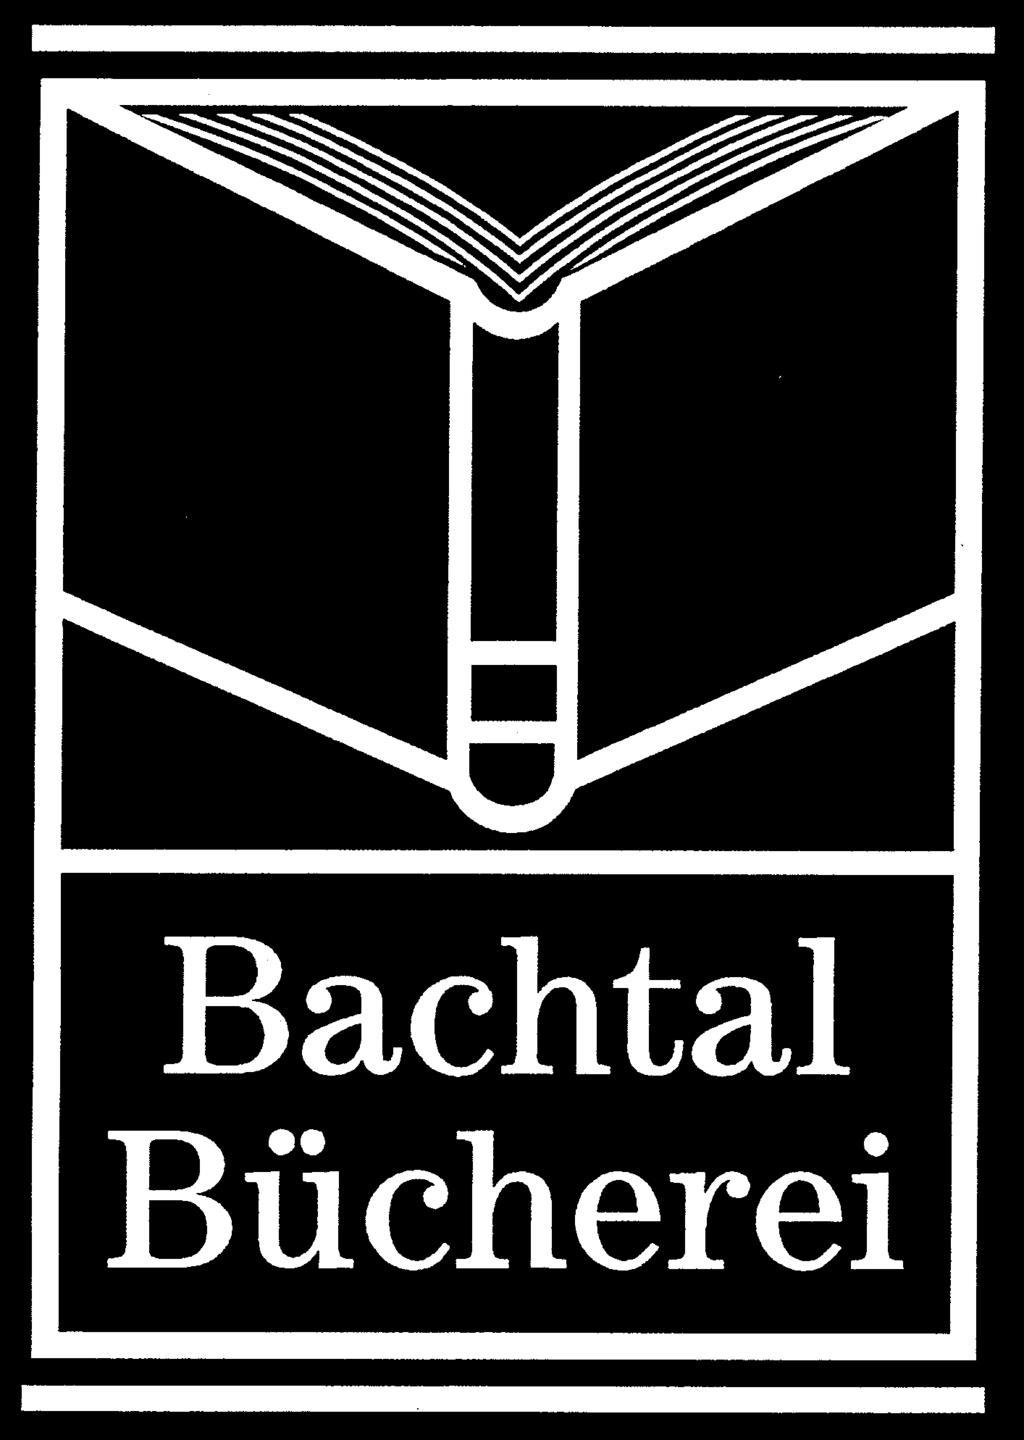 Bachtal Bücherei Endlich Ferien! Die Bachtalbücherei hat für Sie bis einschließlich Donnerstag, 8. August 2019 geöffnet. Ab 5. September 2019 bin ich wieder für Sie da.